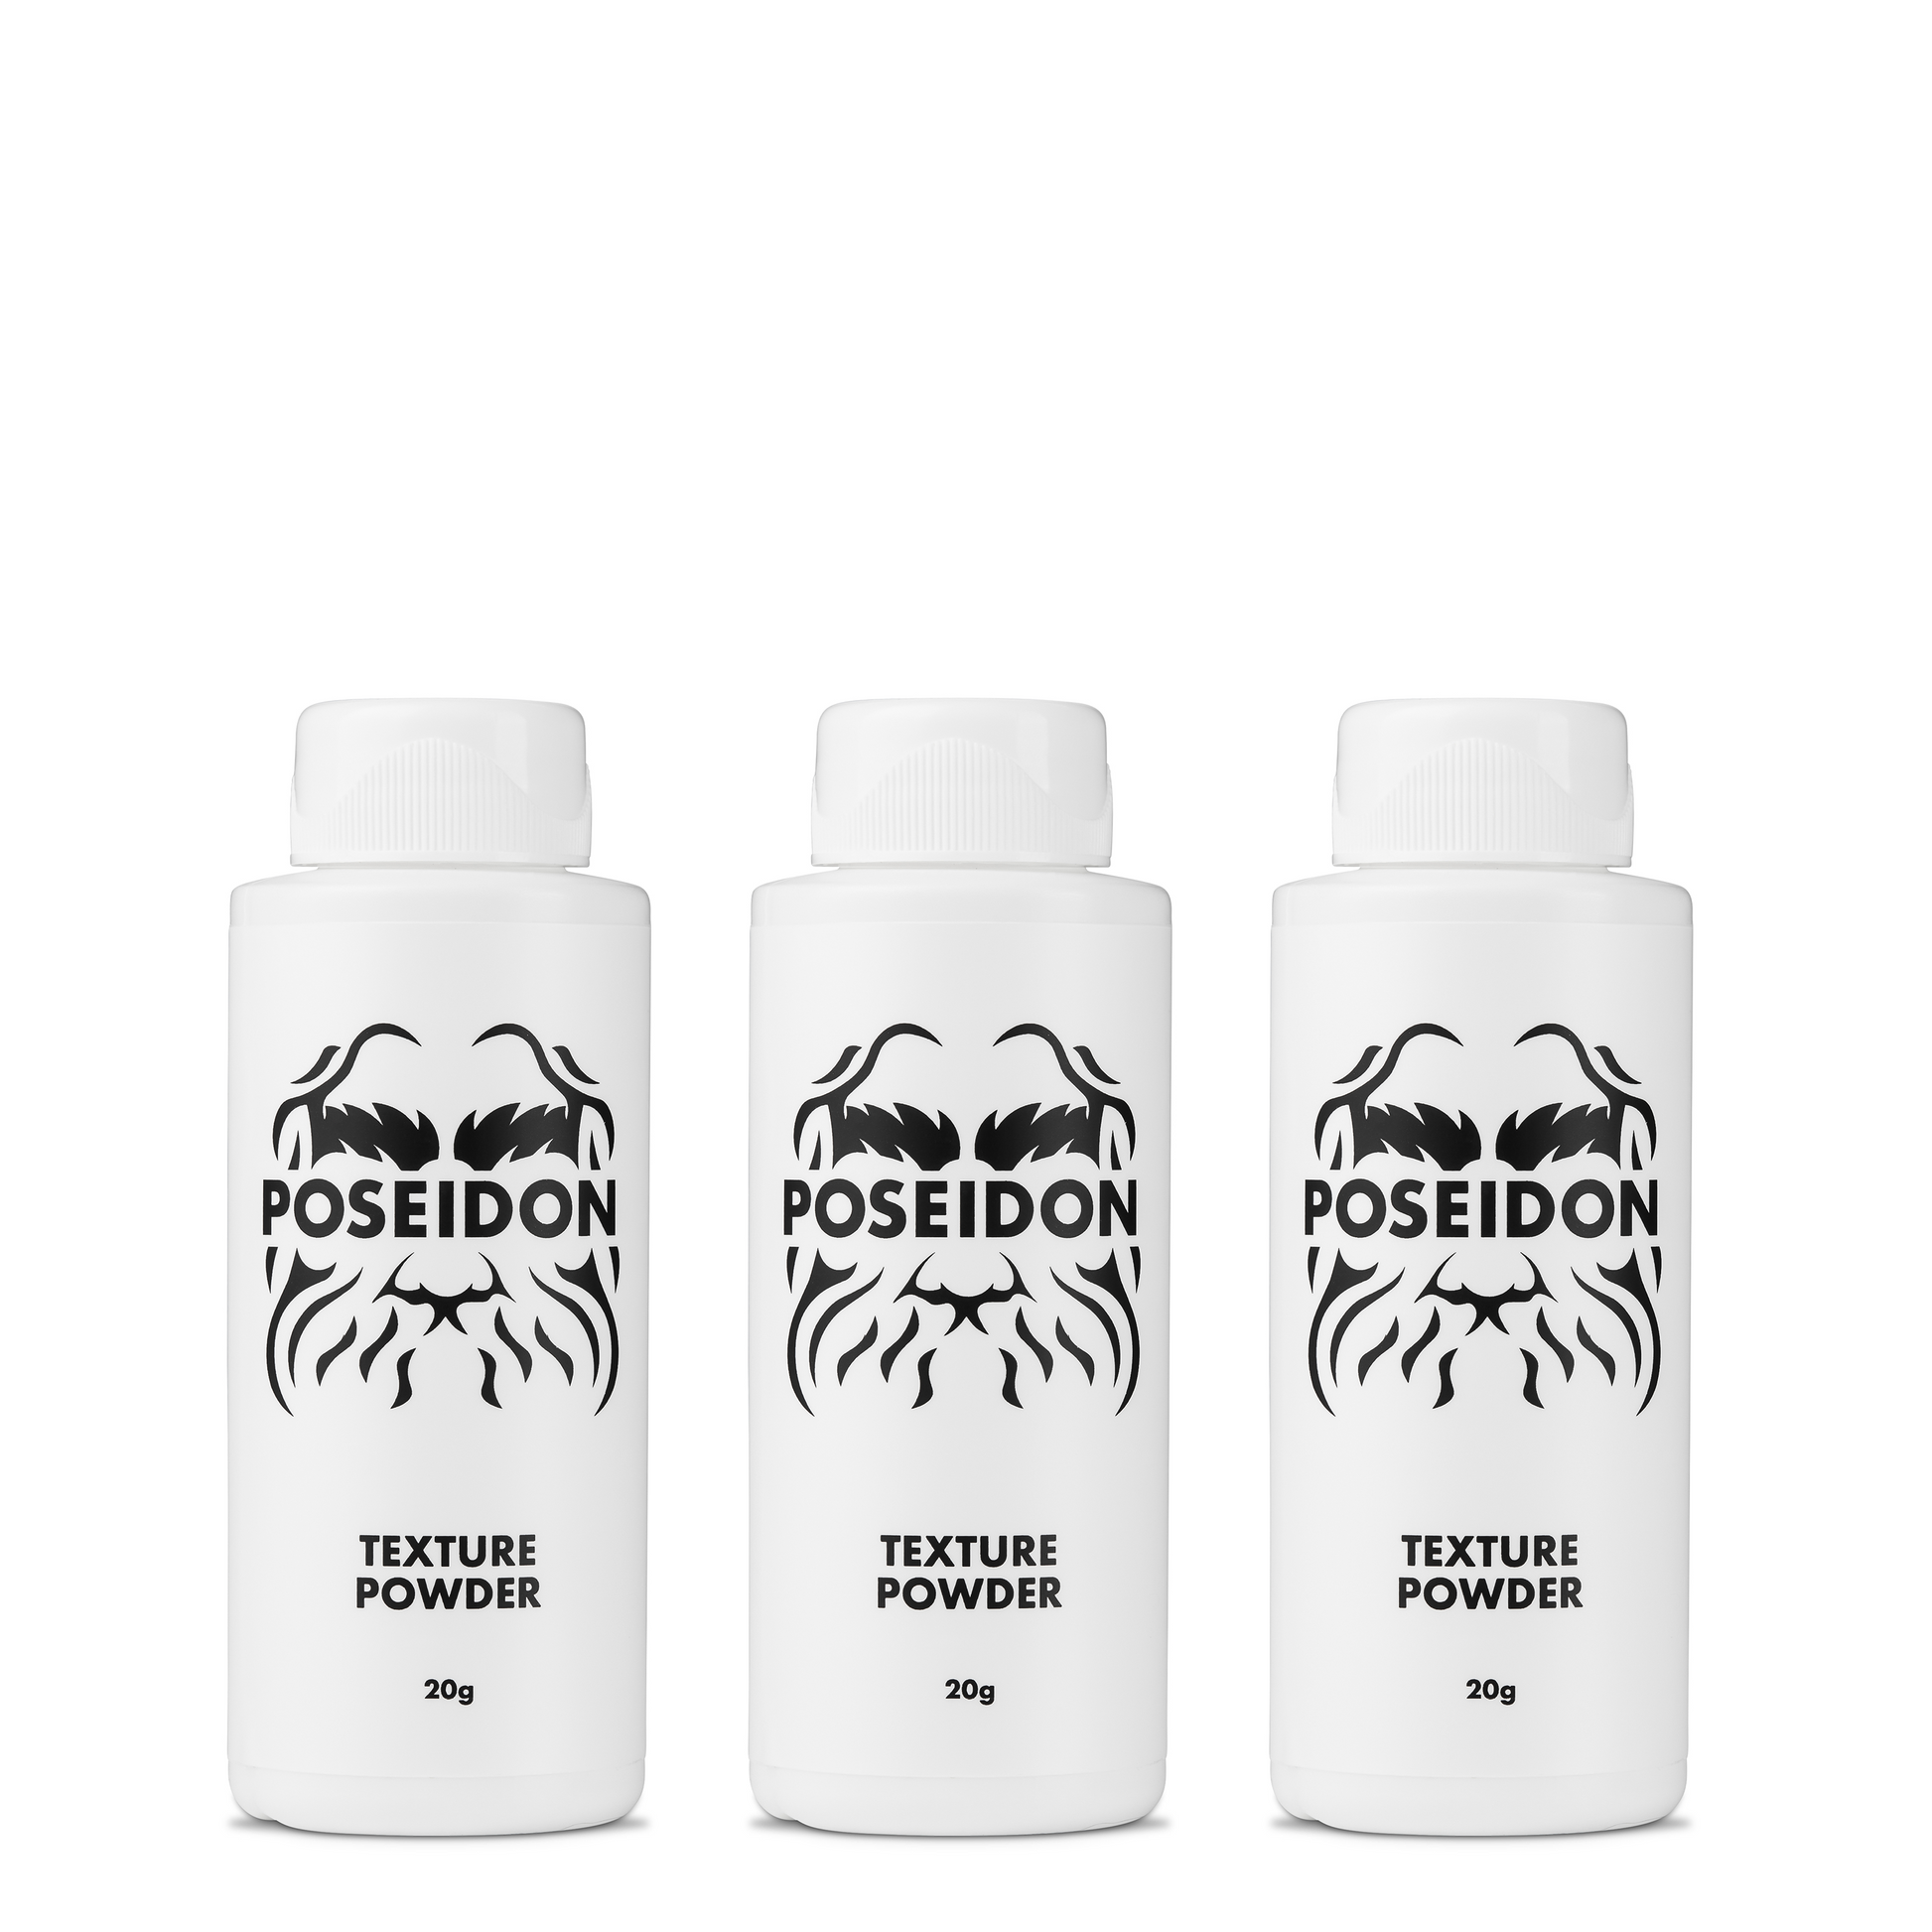 Poseidon Texture Powder – Poseidon Hair